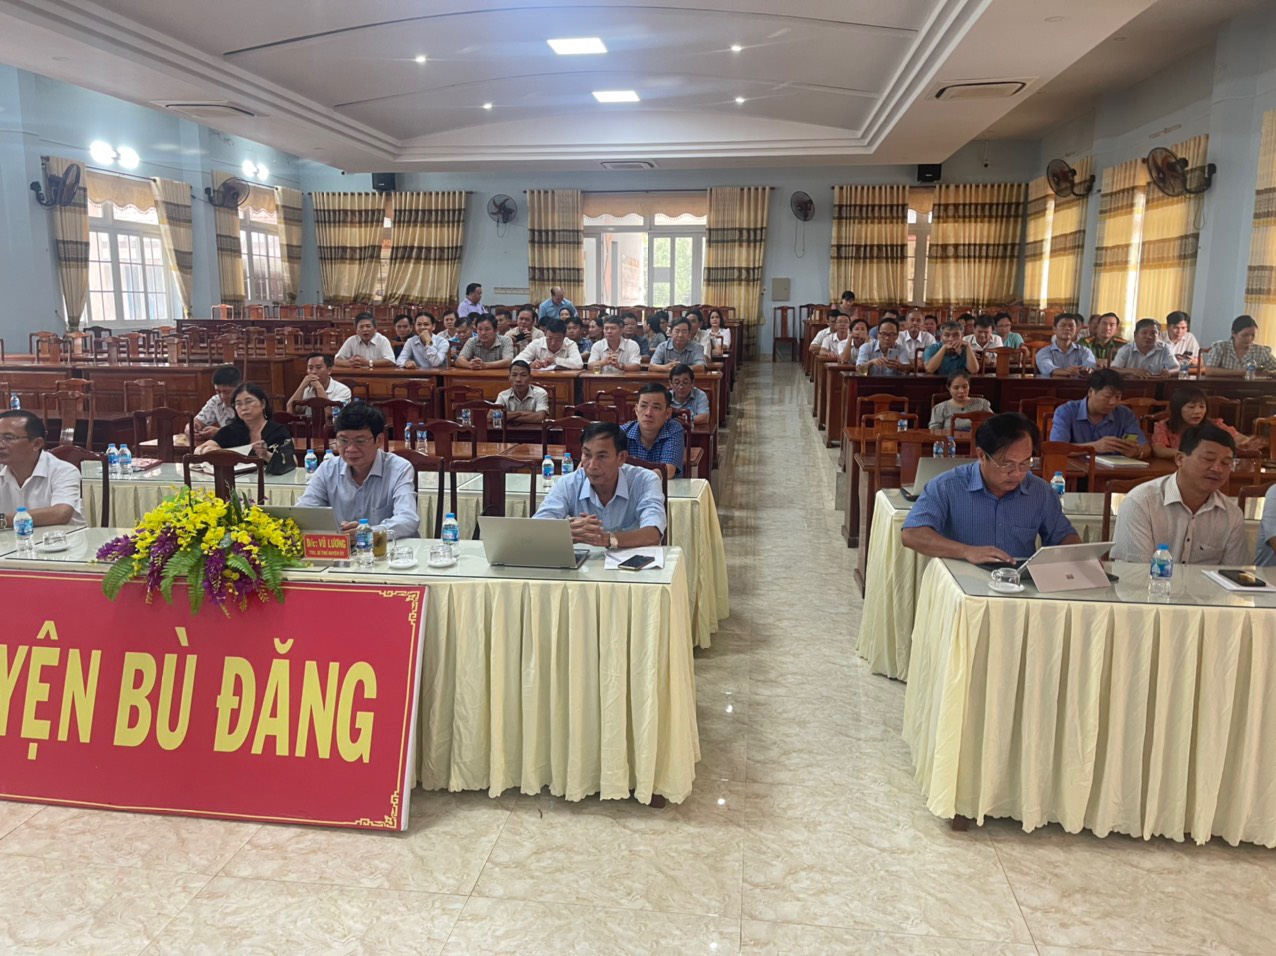 Đồng chí Vũ Lương - TUV, Bí thư Huyện uỷ Bù Đăng, chủ trì hội nghị taị điểm cầu Huyện uỷ